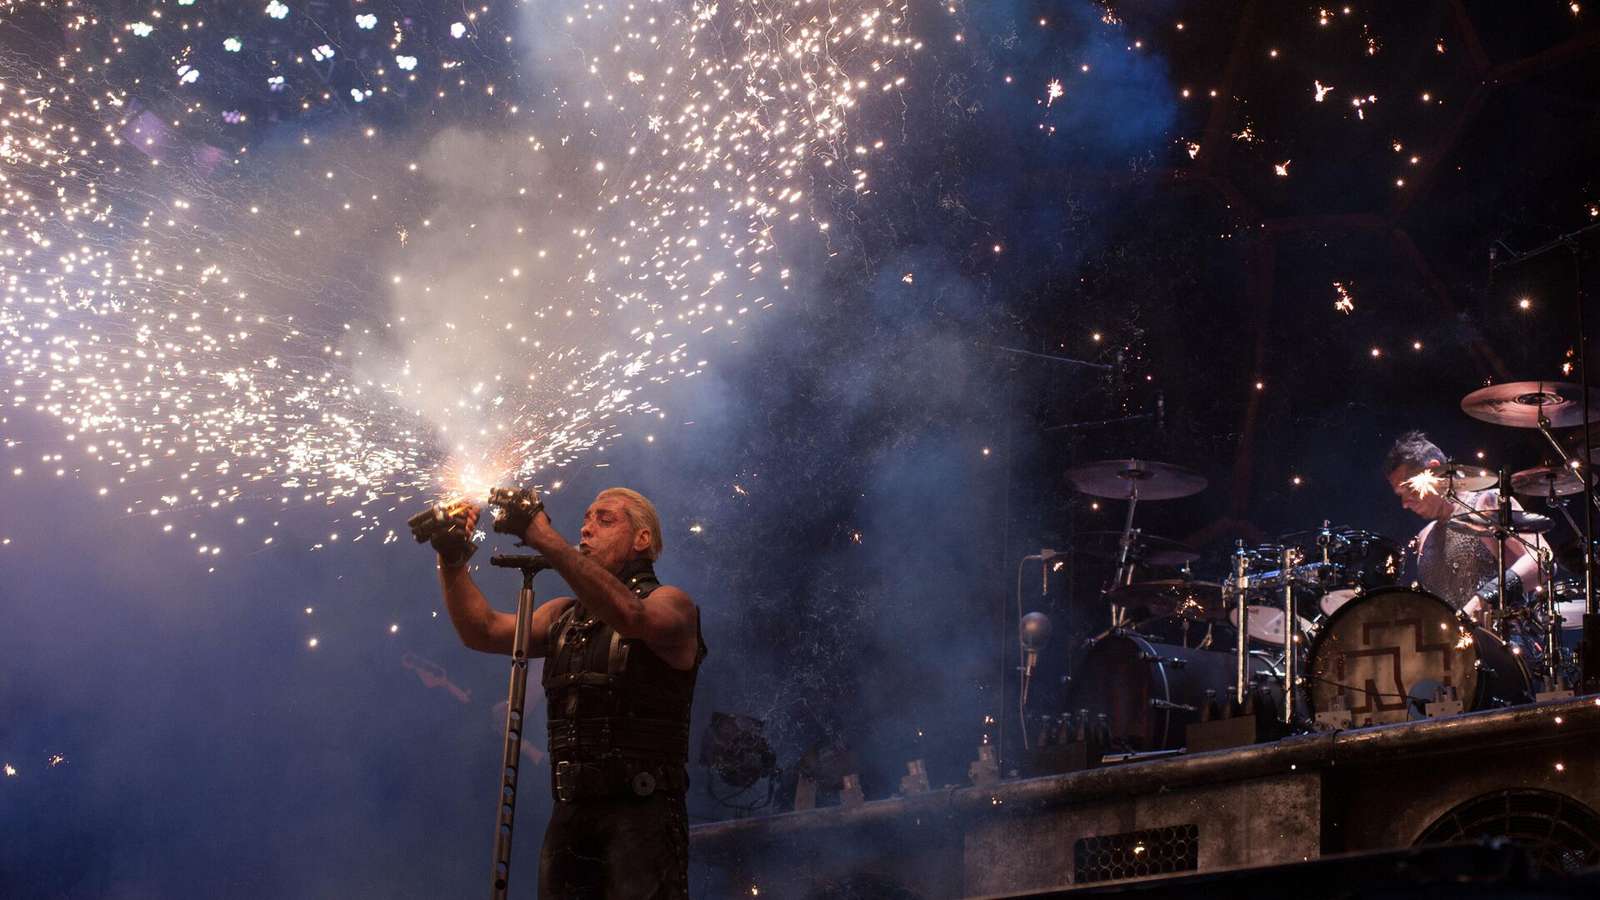 El concierto de Rammstein provocó una potente anomalía a nivel cuántico en Alemania